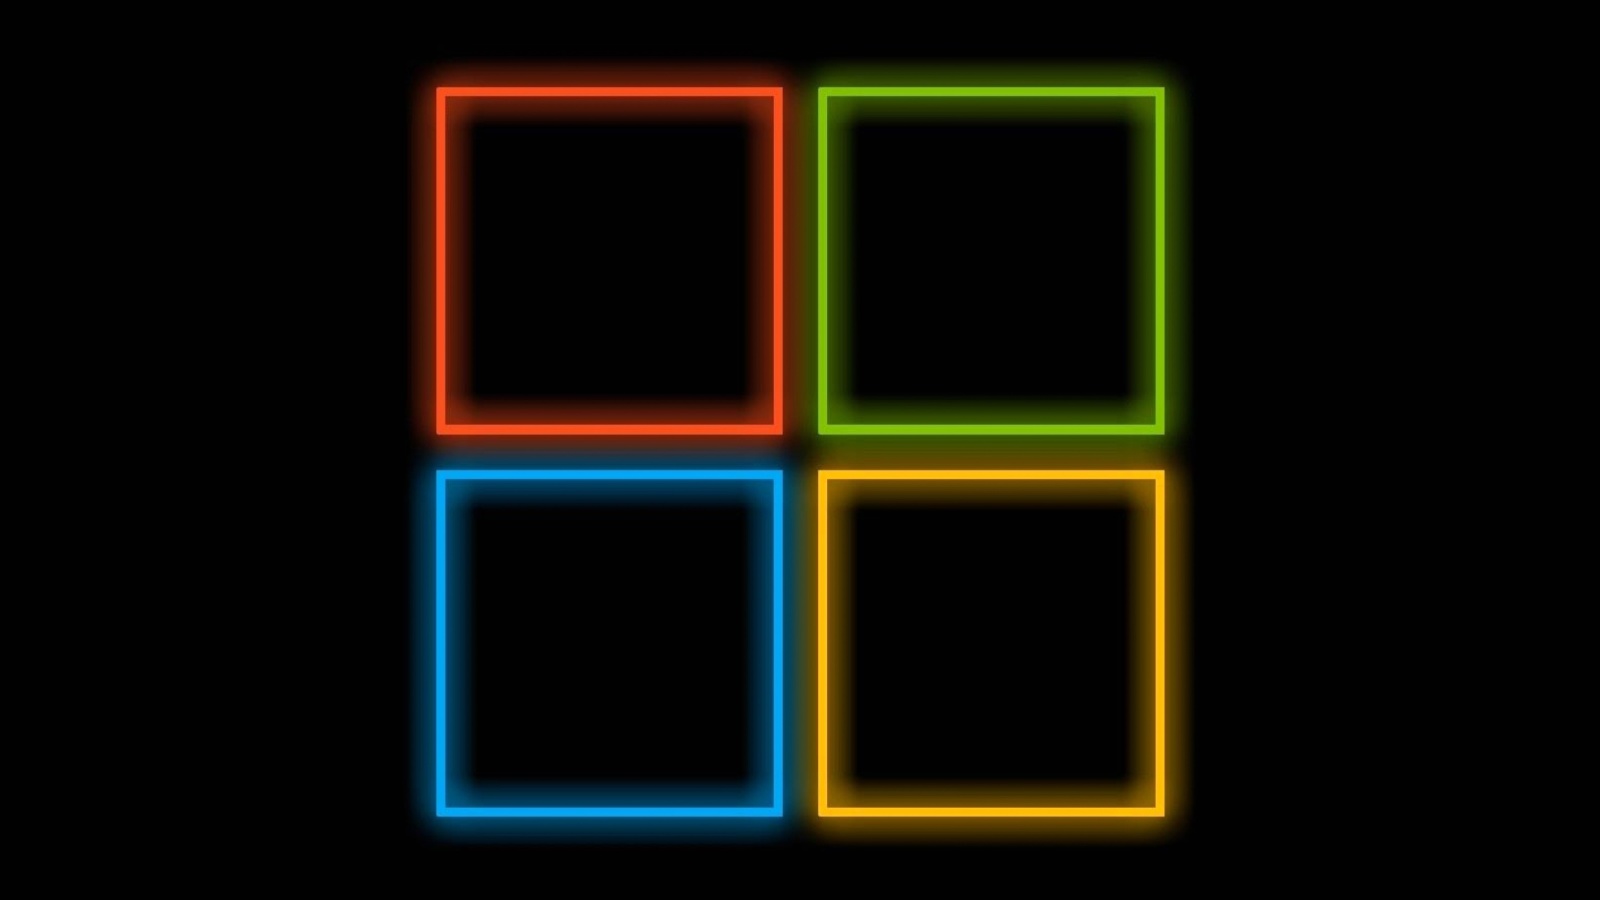 Das OS Windows 10 Neon Wallpaper 1600x900